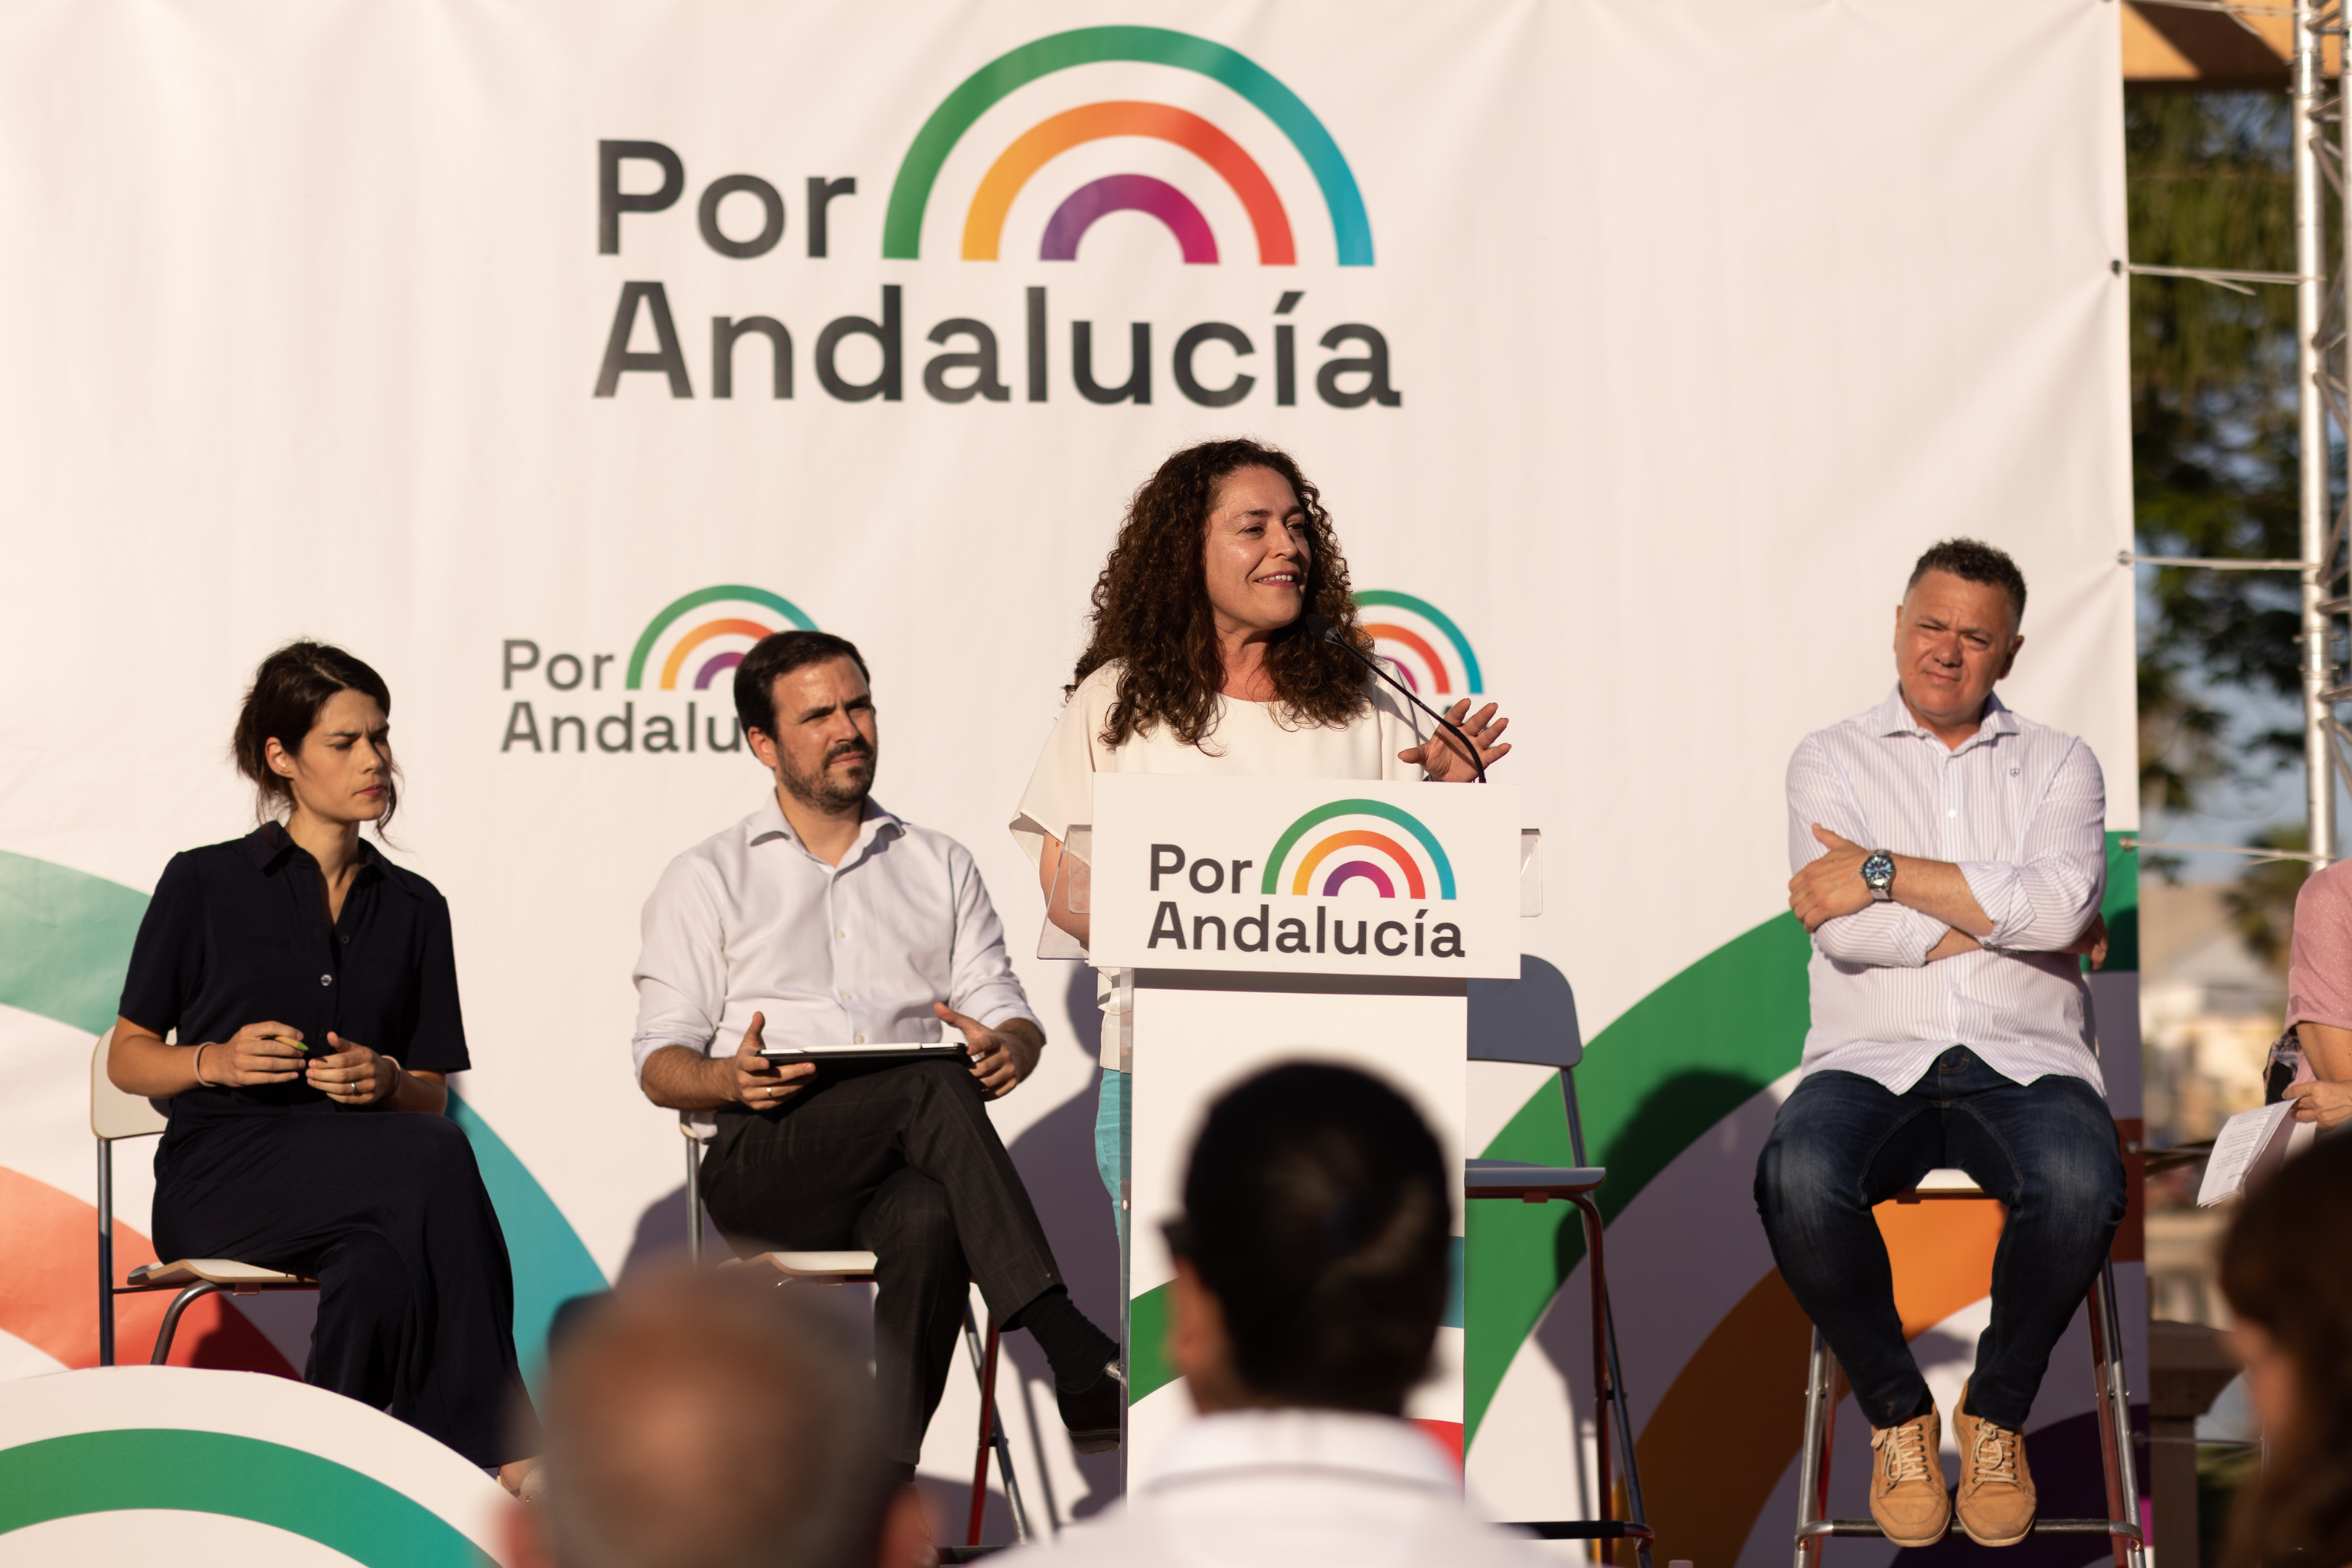 La candidata a la presidencia de la Junta de Andaluca de Por Andaluca, Inmaculada Nieto, en un acto en Mlaga.